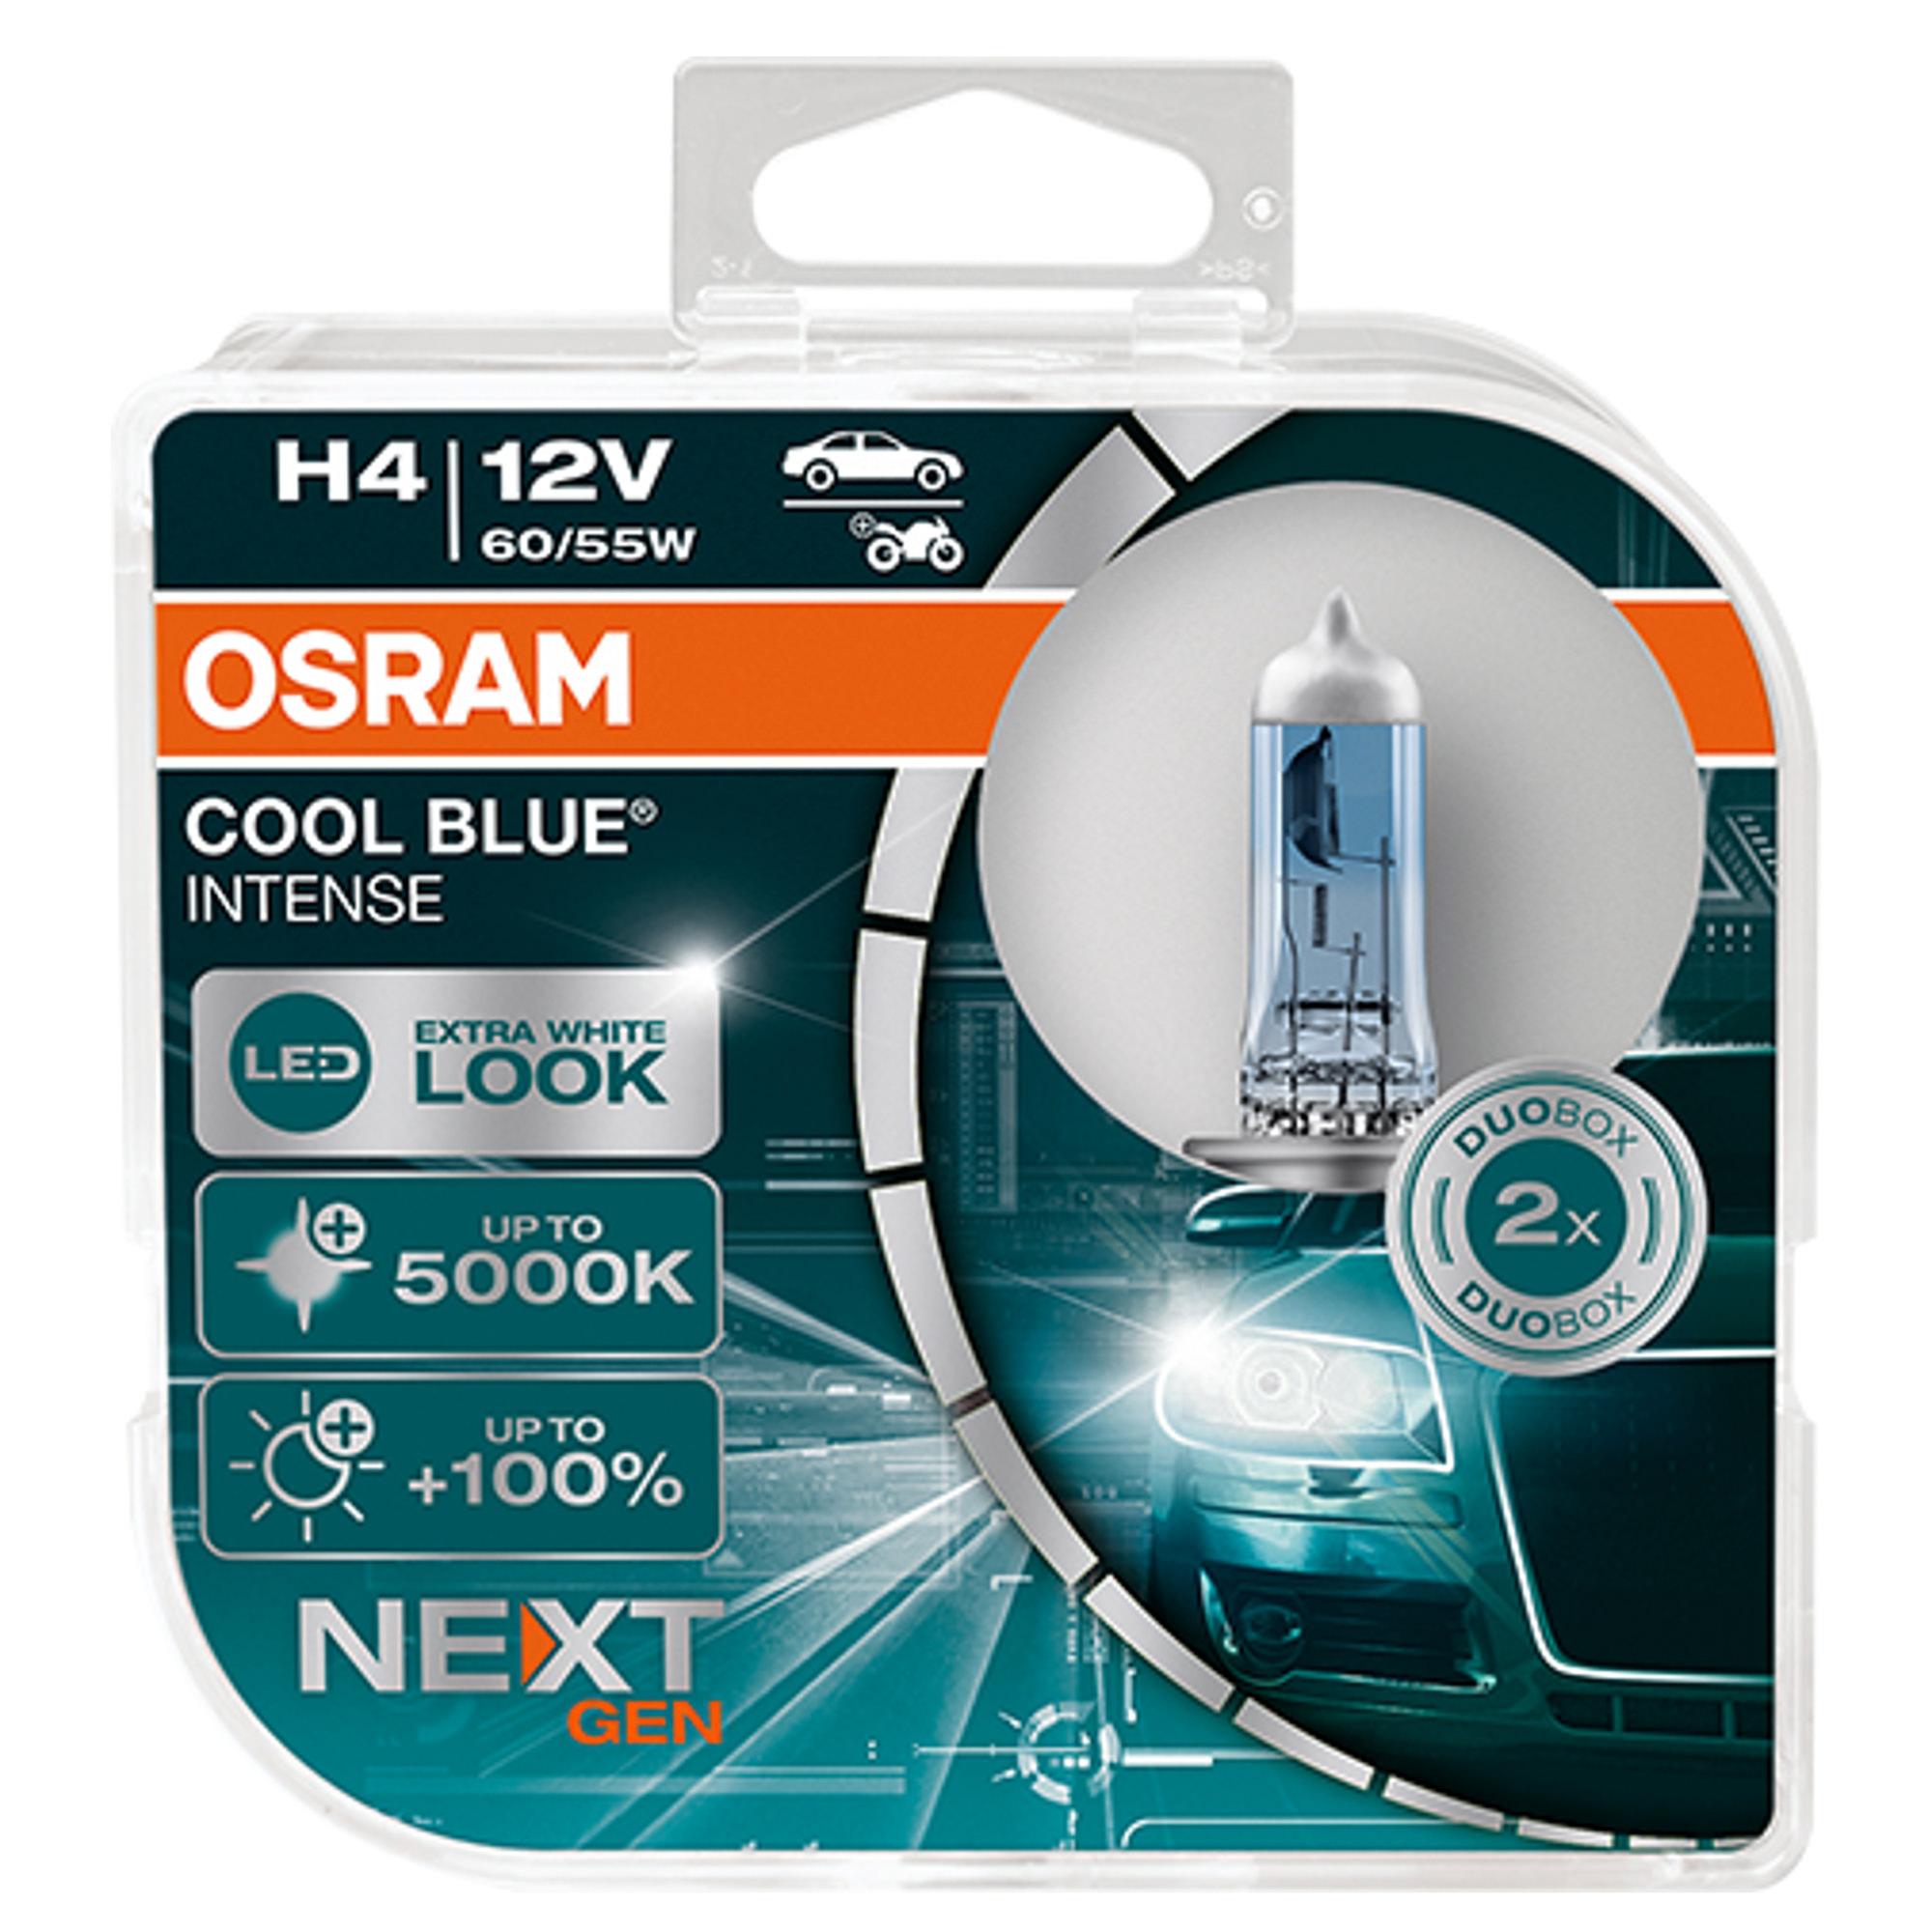  OSRAM H4 60/55w 5000k +100% COOL BLUE INTENSE (NEXT GEN)